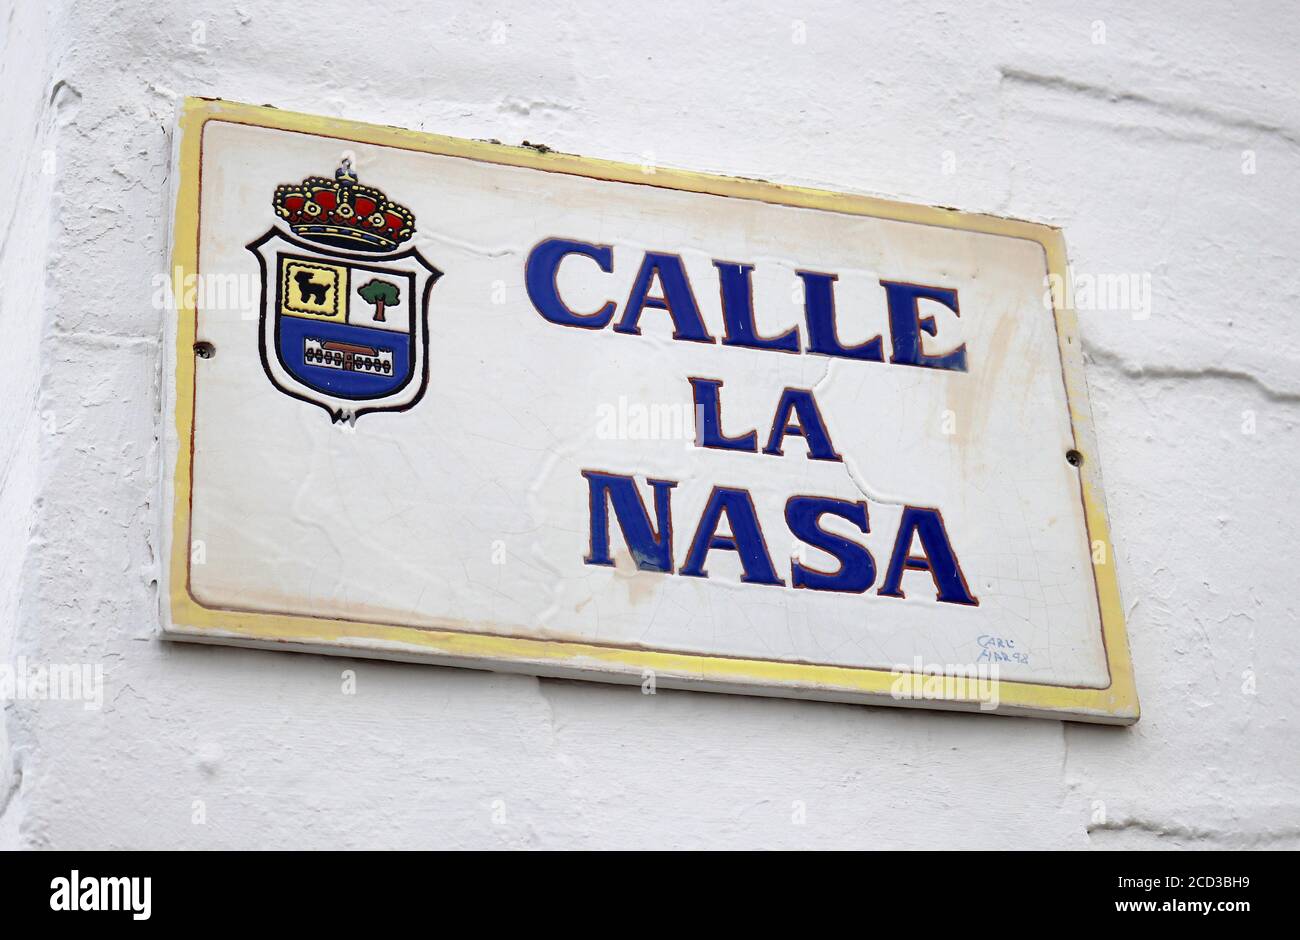 Impressionen: Calle de Nasa, Corralejo, Fuerteventura, Kanarische Inseln, Spanien/ Fuerteventura, Canary Islands, Spain  (nur fuer redaktionelle Verwe Stock Photo